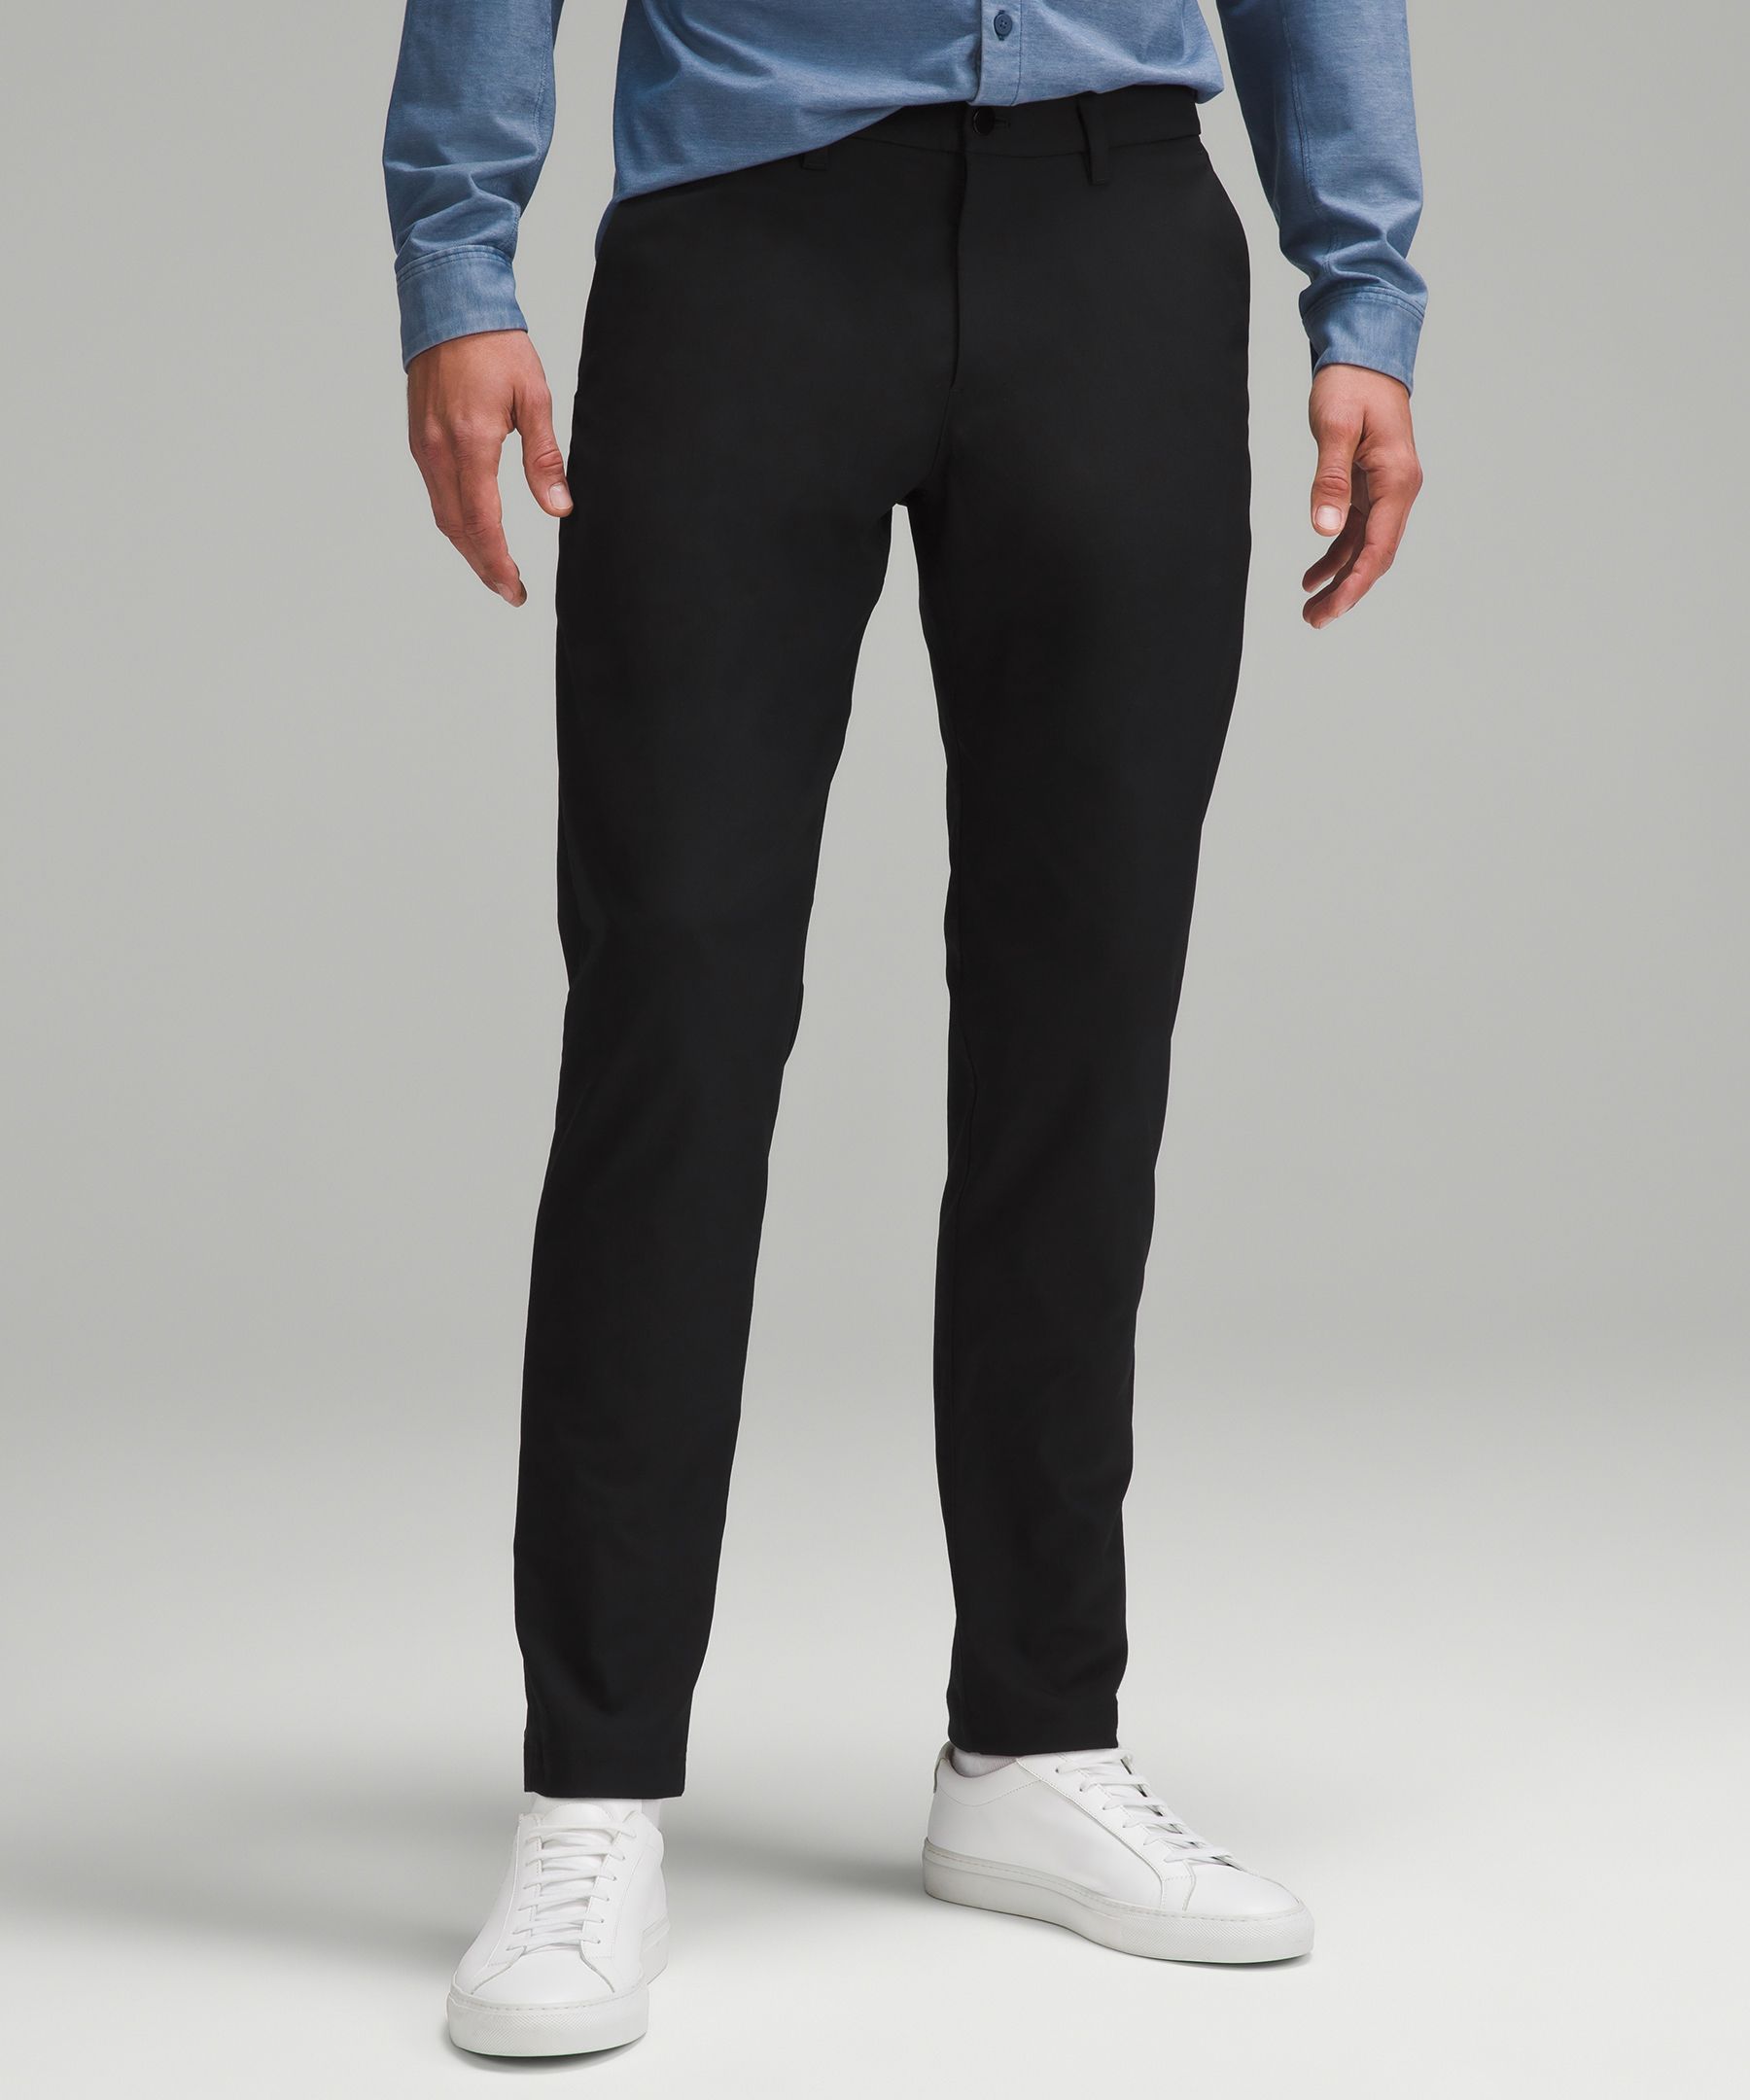 I am obsessed with these pants… #lululemon #lifestyle #shopping #shopp